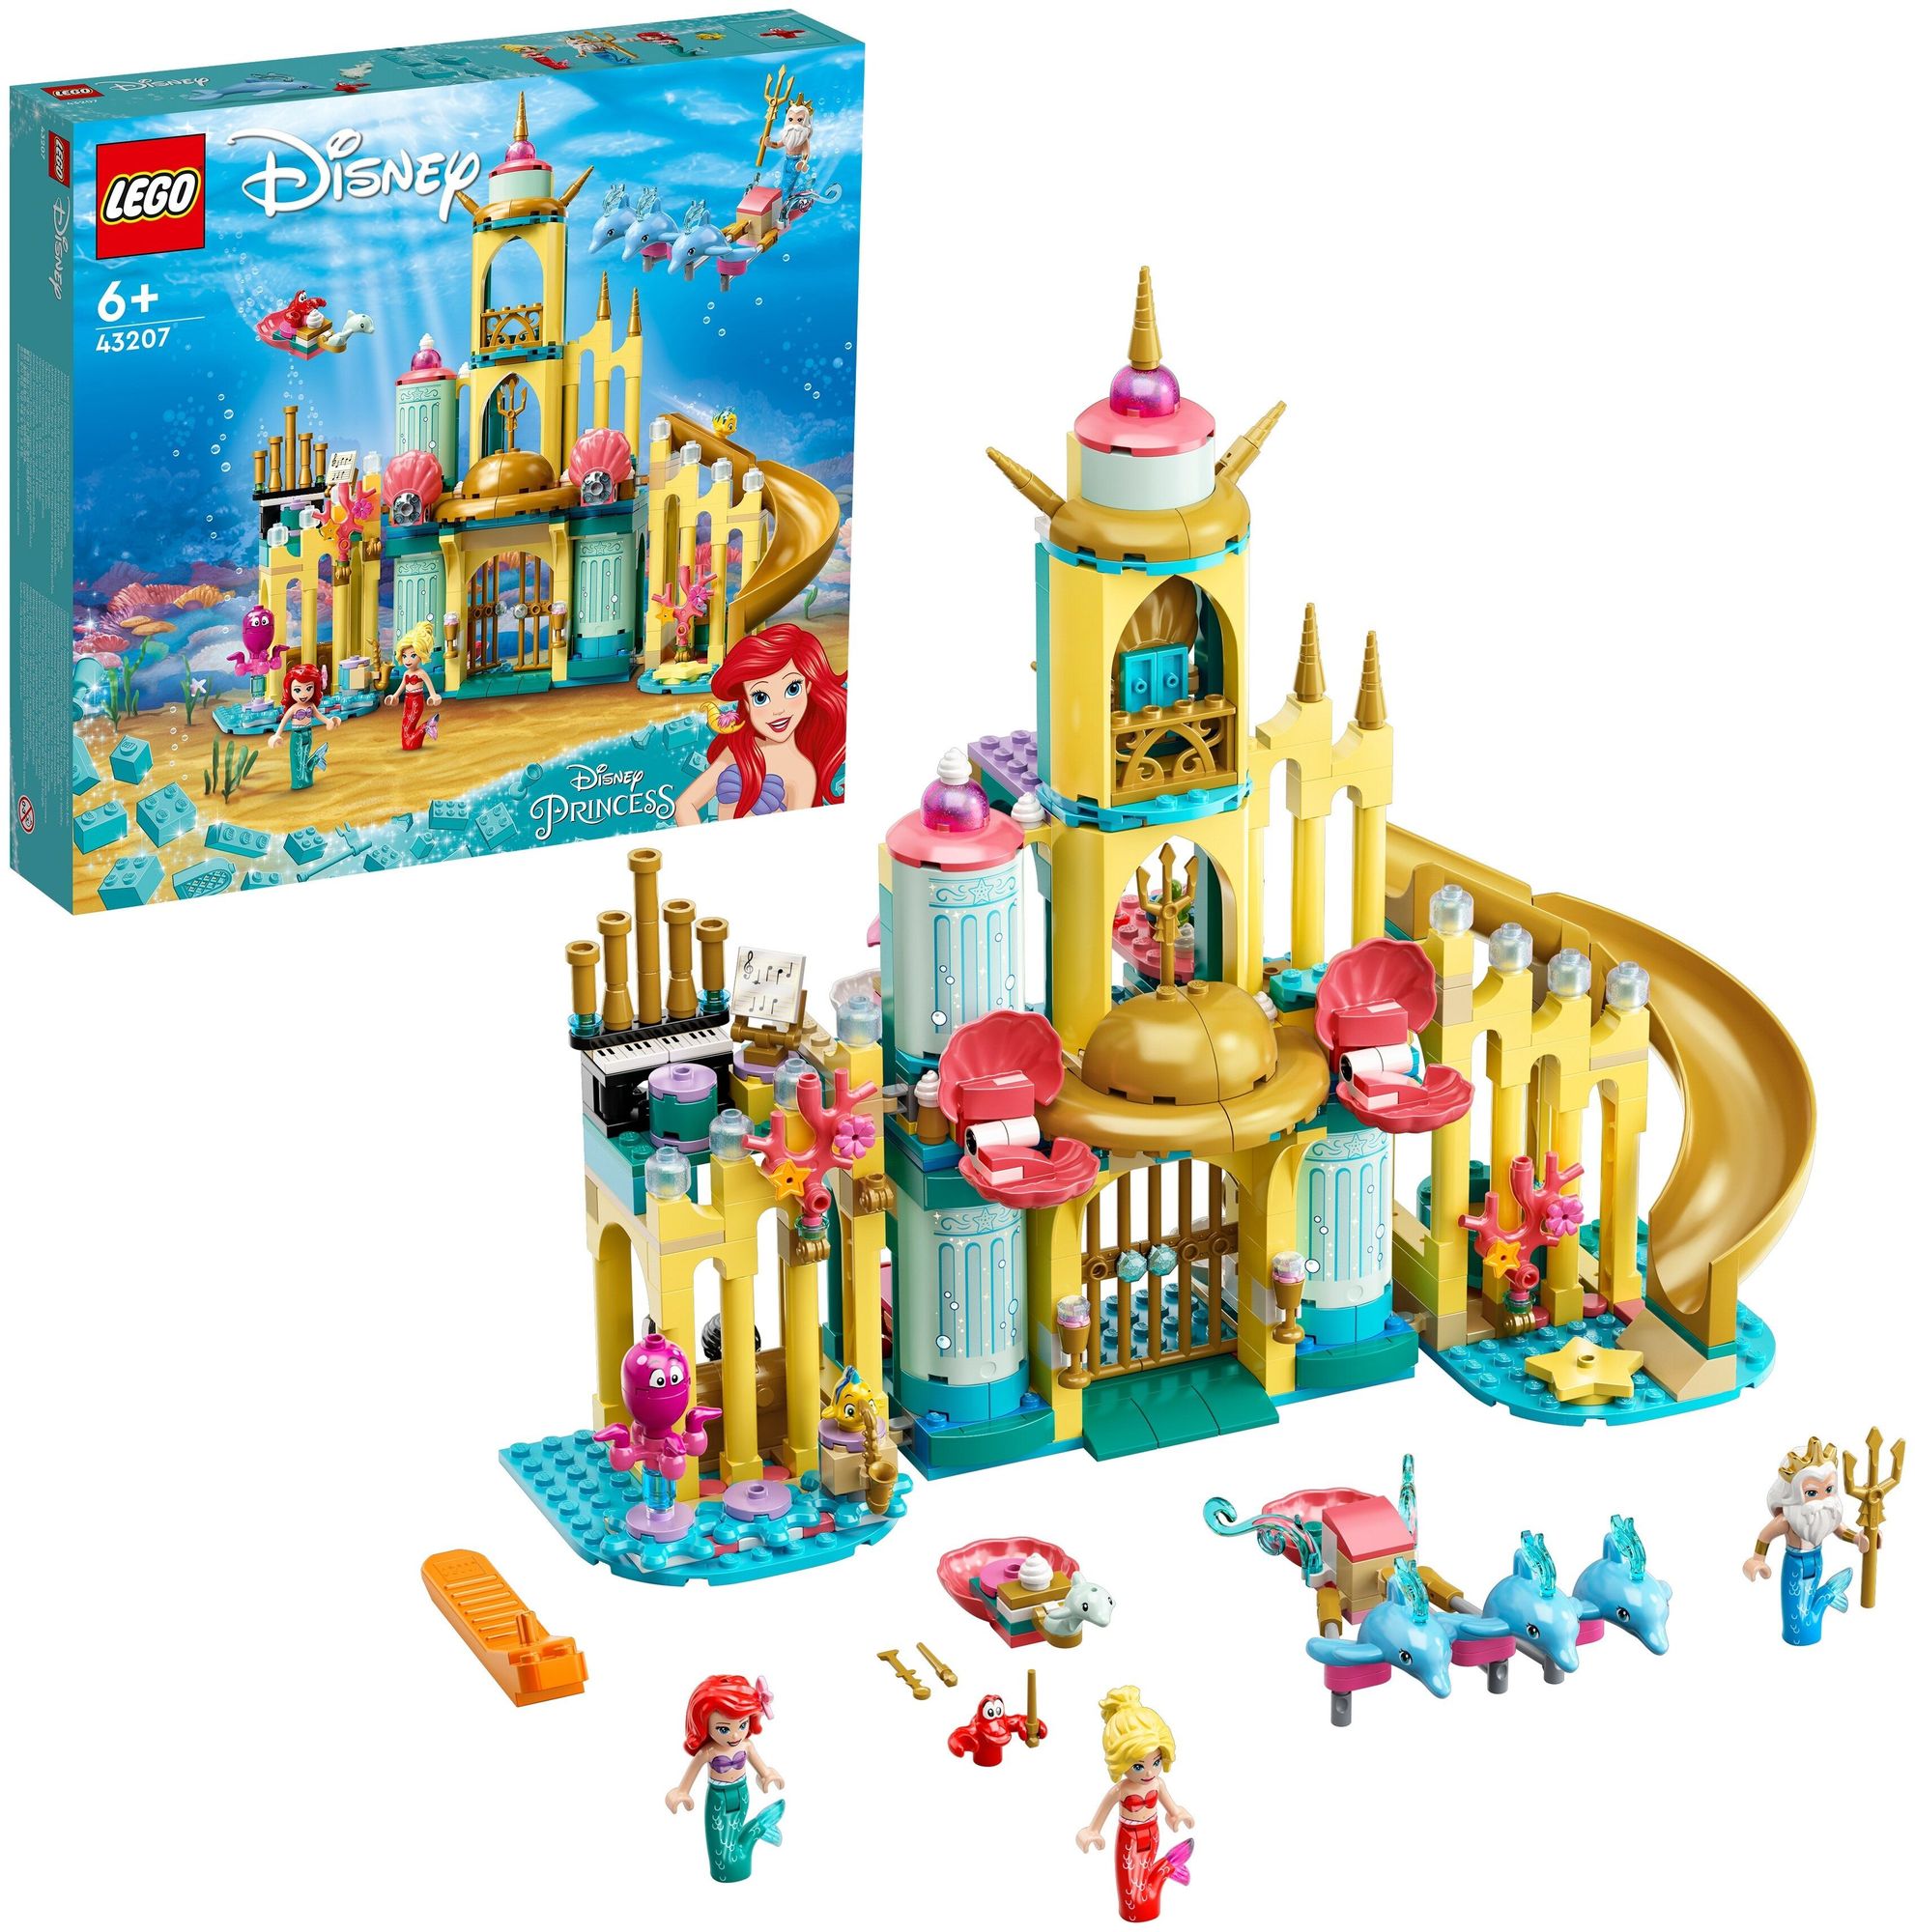 Конструктор LEGO Disney Princess Подводный дворец Ариэль 43207 конструктор lego disney princess 41063 подводный дворец ариэль 379 дет